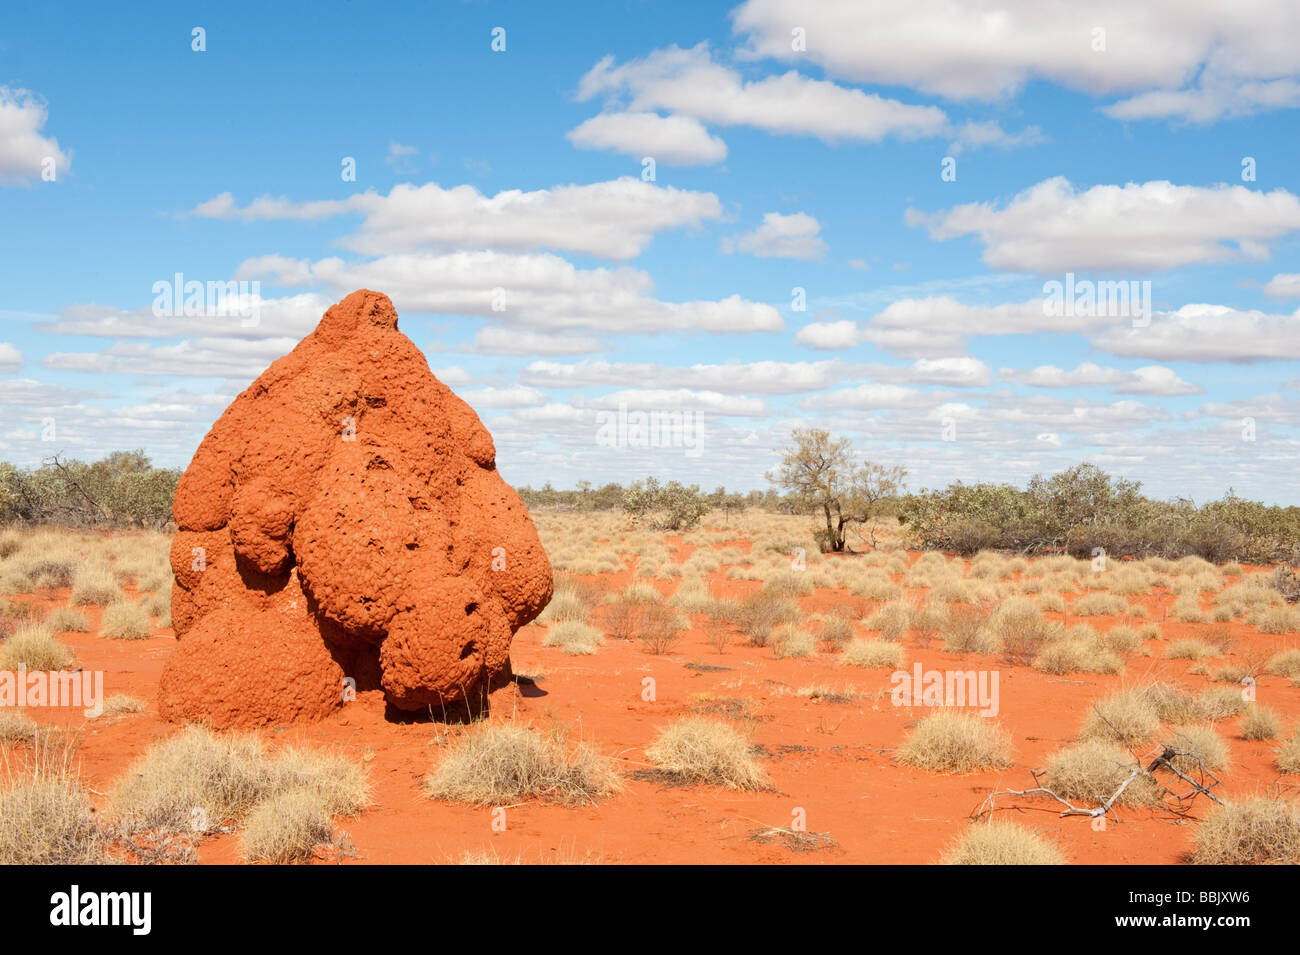 Giant termite mound in Central Australia Stock Photo